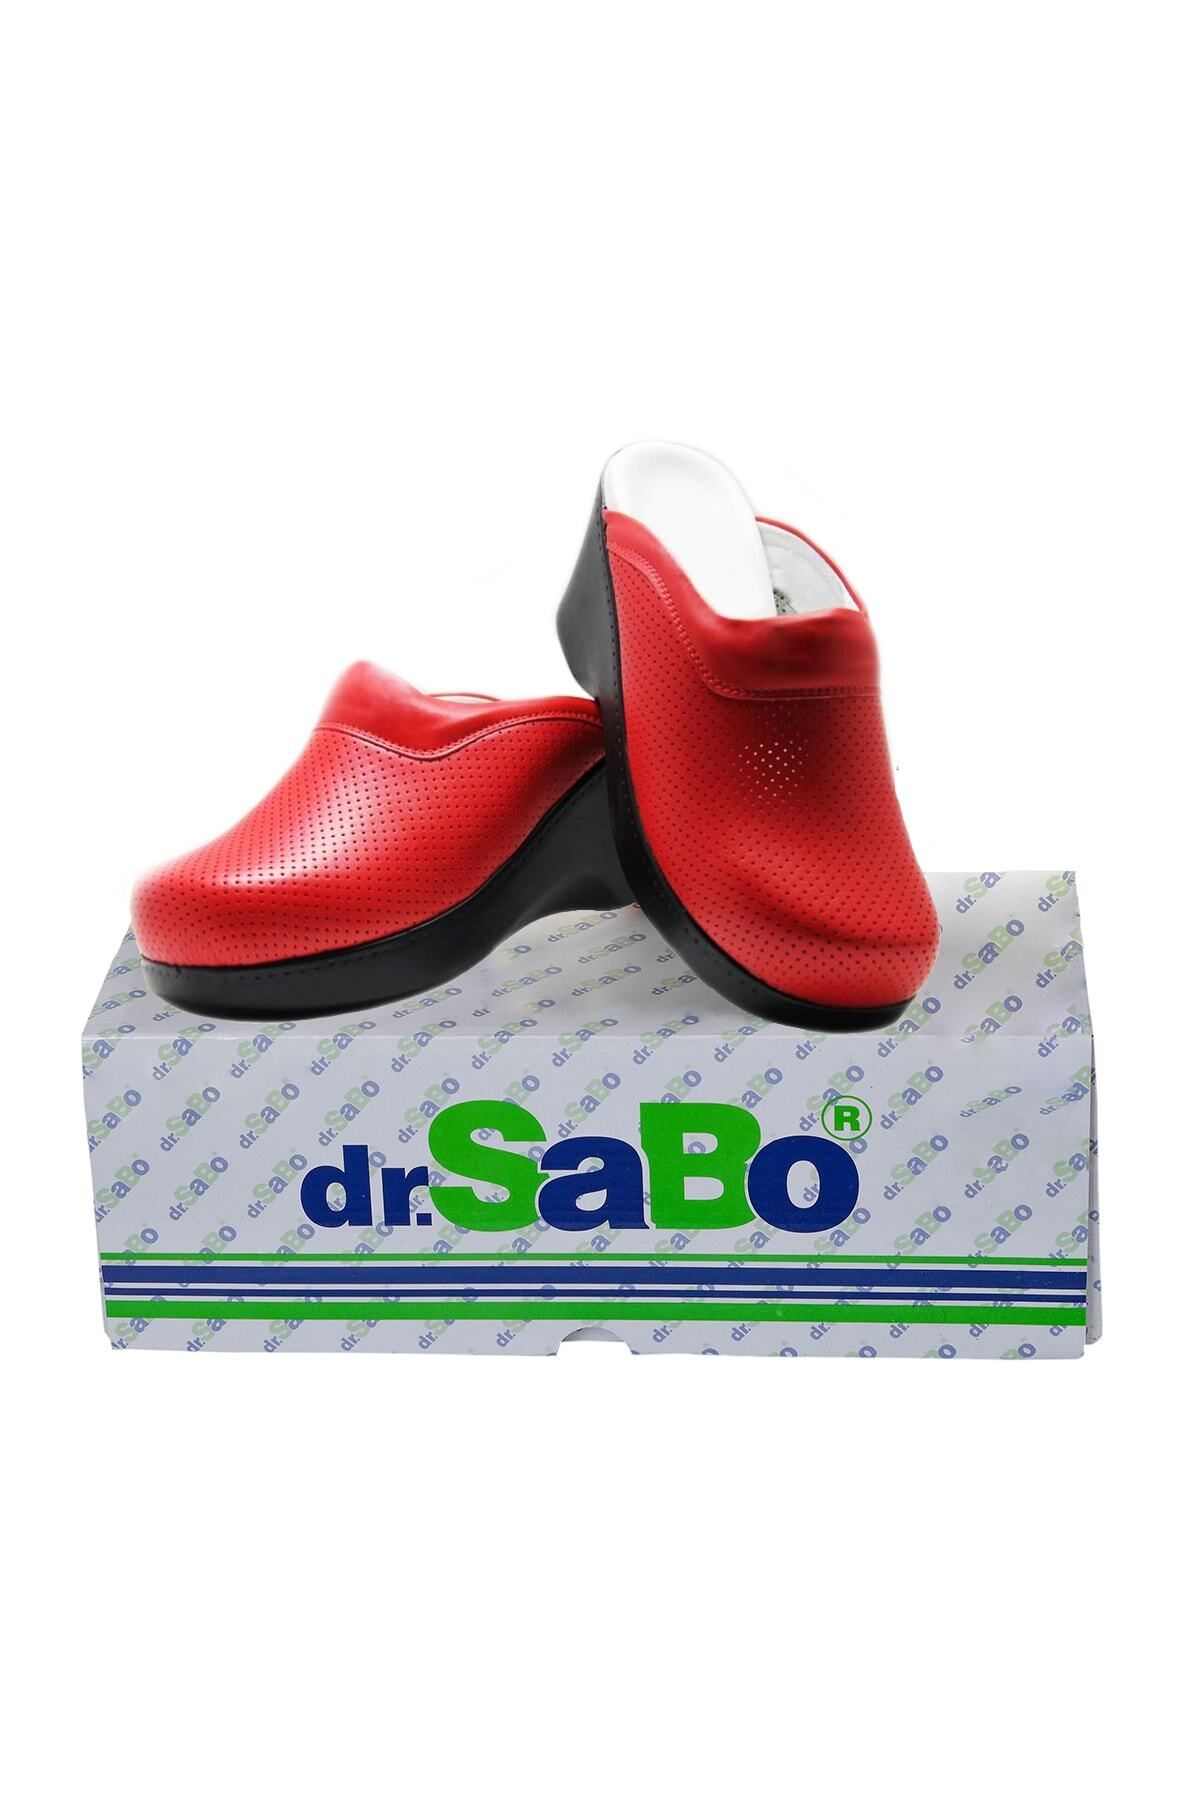 DR SABO Yüksek Topuk Platform Ortopedik Deri Sabo Terlik Kırmızı